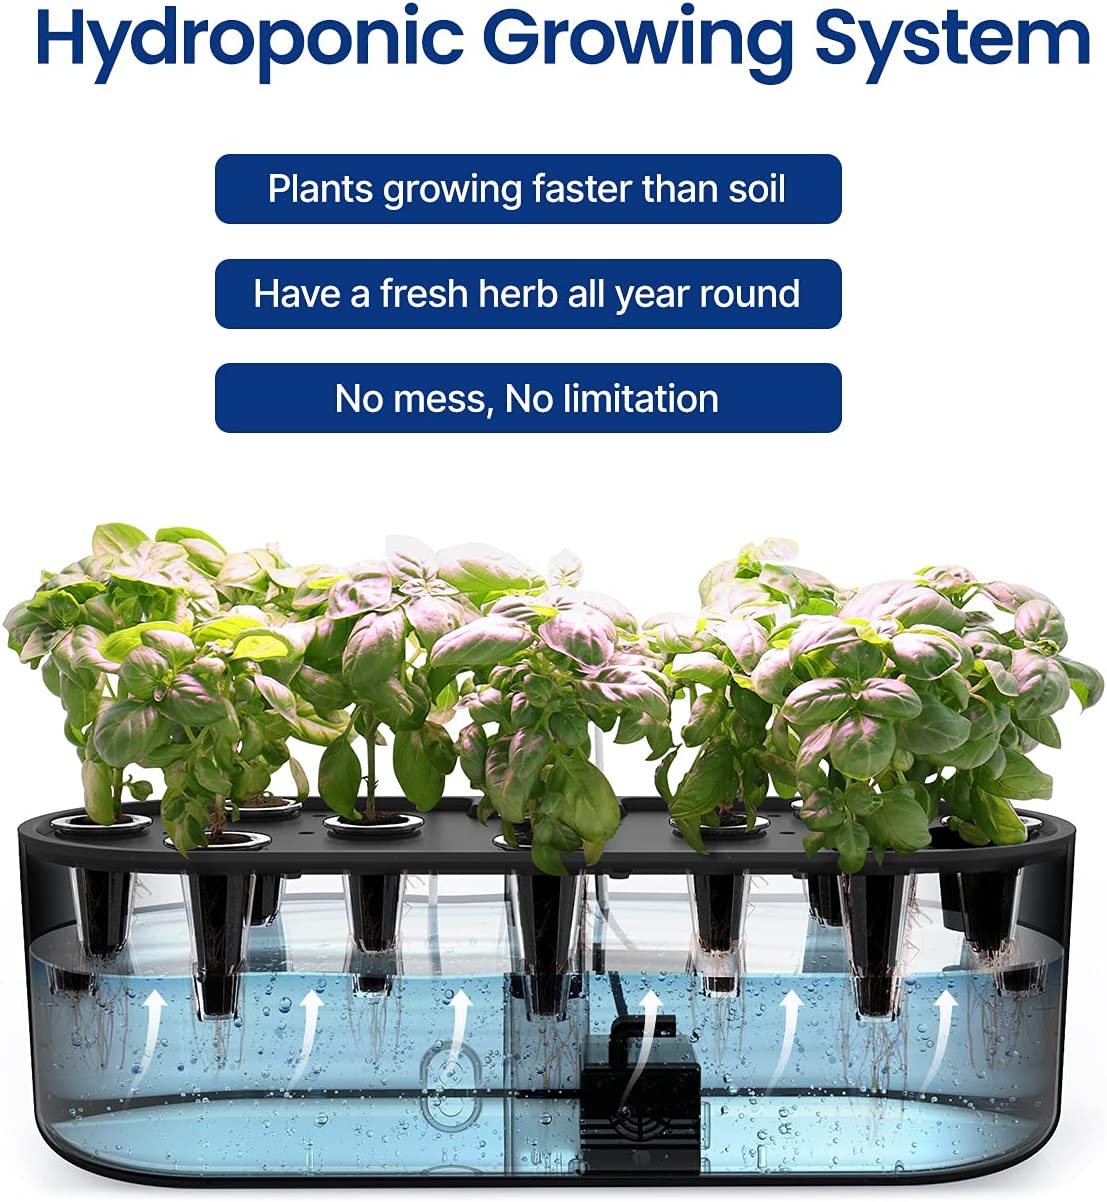 iDOO 10 Pods Indoor Herb Garden - 10 Pods _wf_cus Hydroponic Growing System Hydroponic Growing Systems by idoo